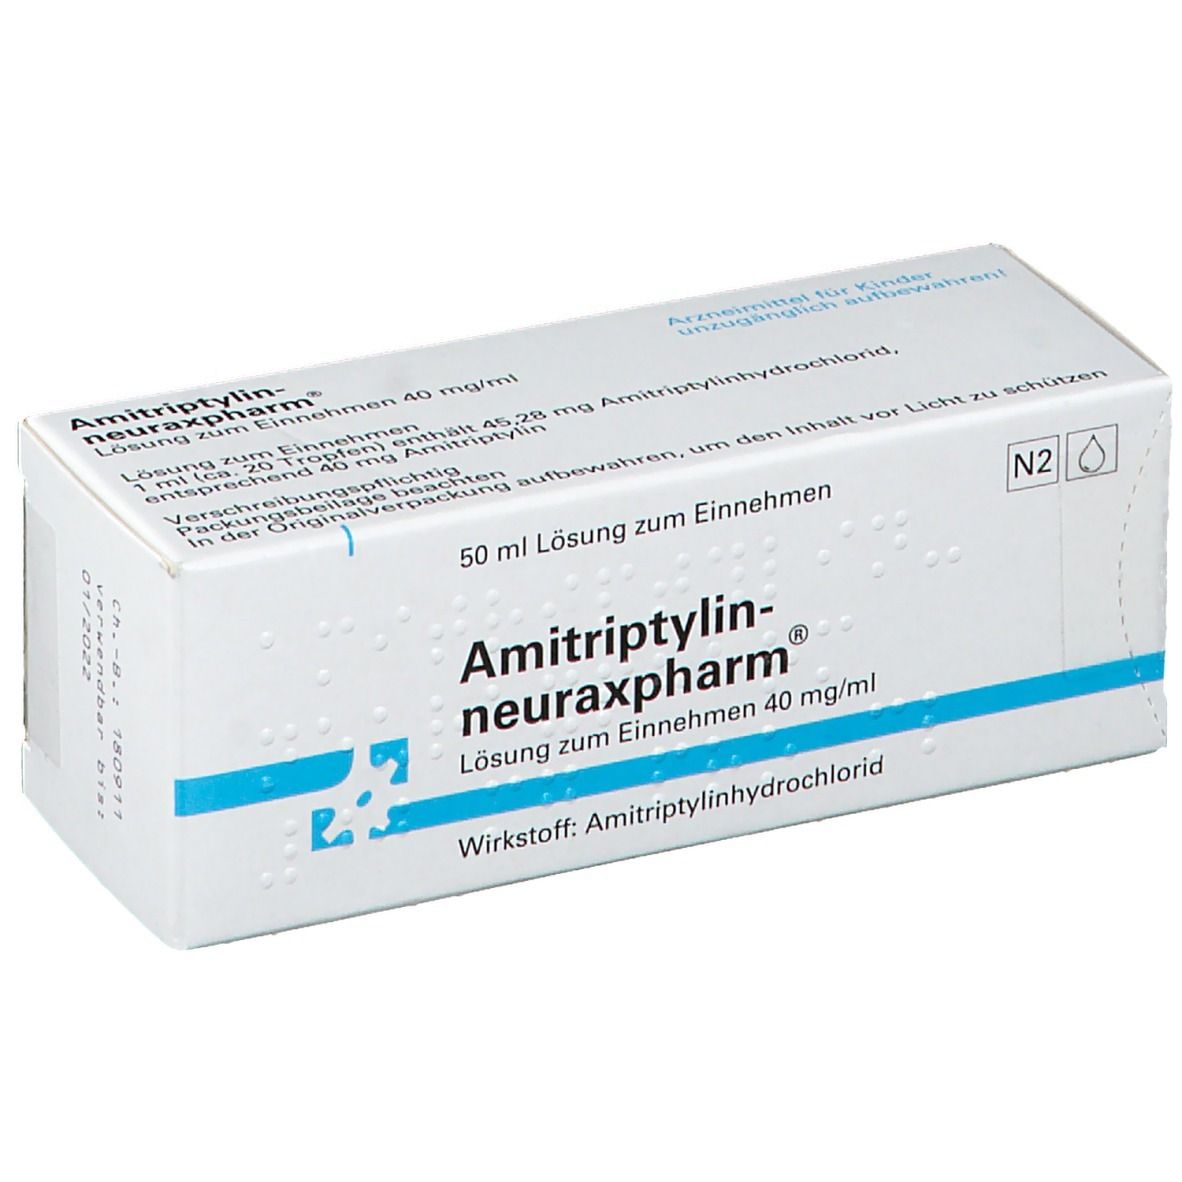 Amitriptylin-neuraxpharm®